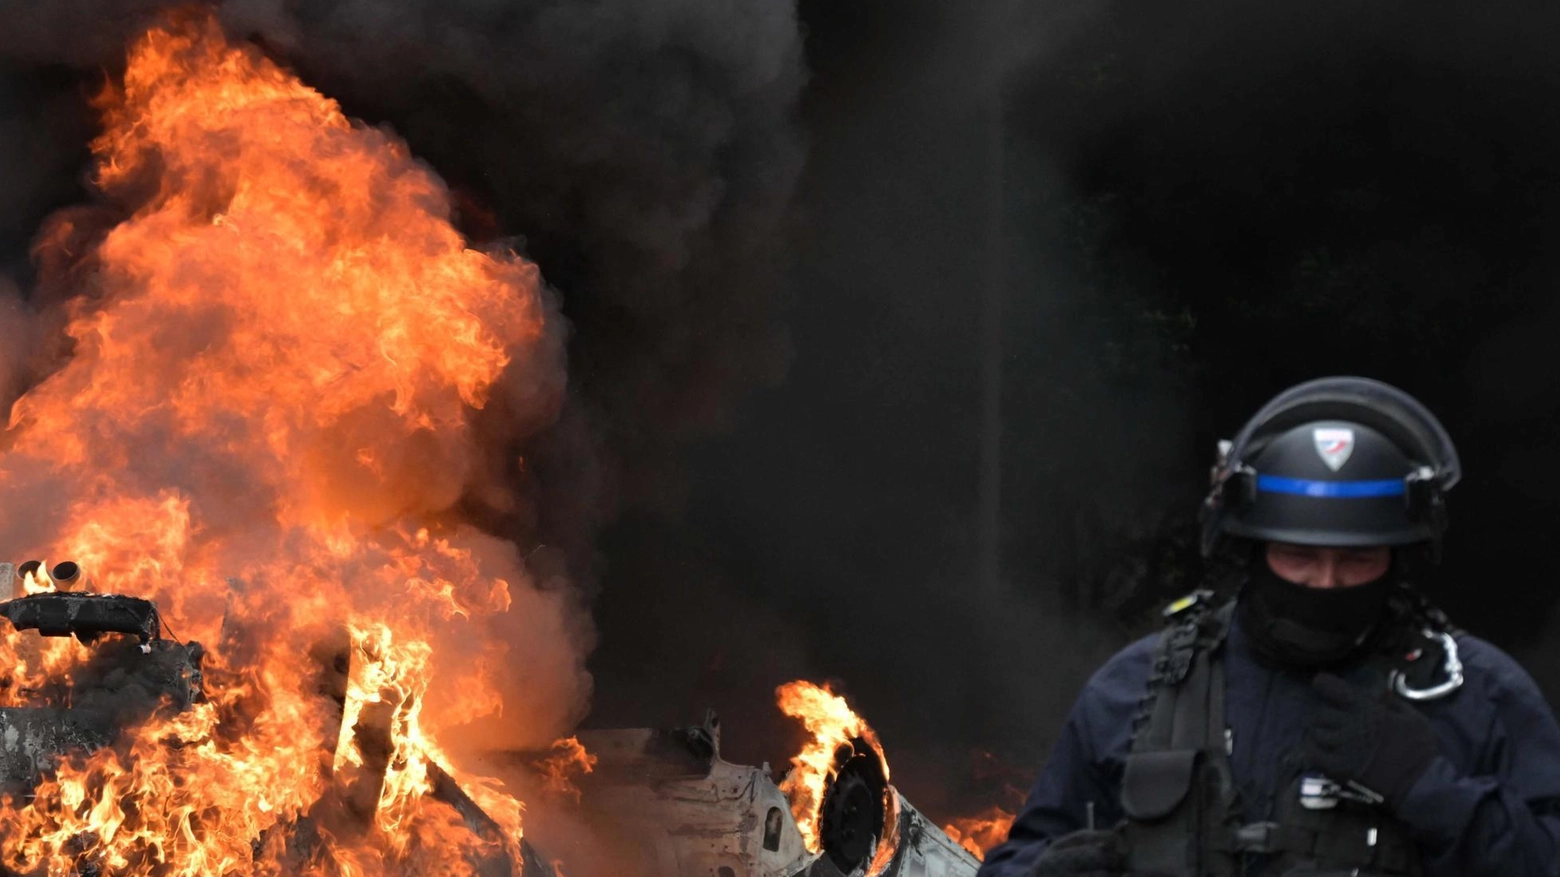 Francia a ferro e fuoco  La protesta dilaga: un morto  Macron si appella ai genitori  "Tenete i vostri figli a casa"